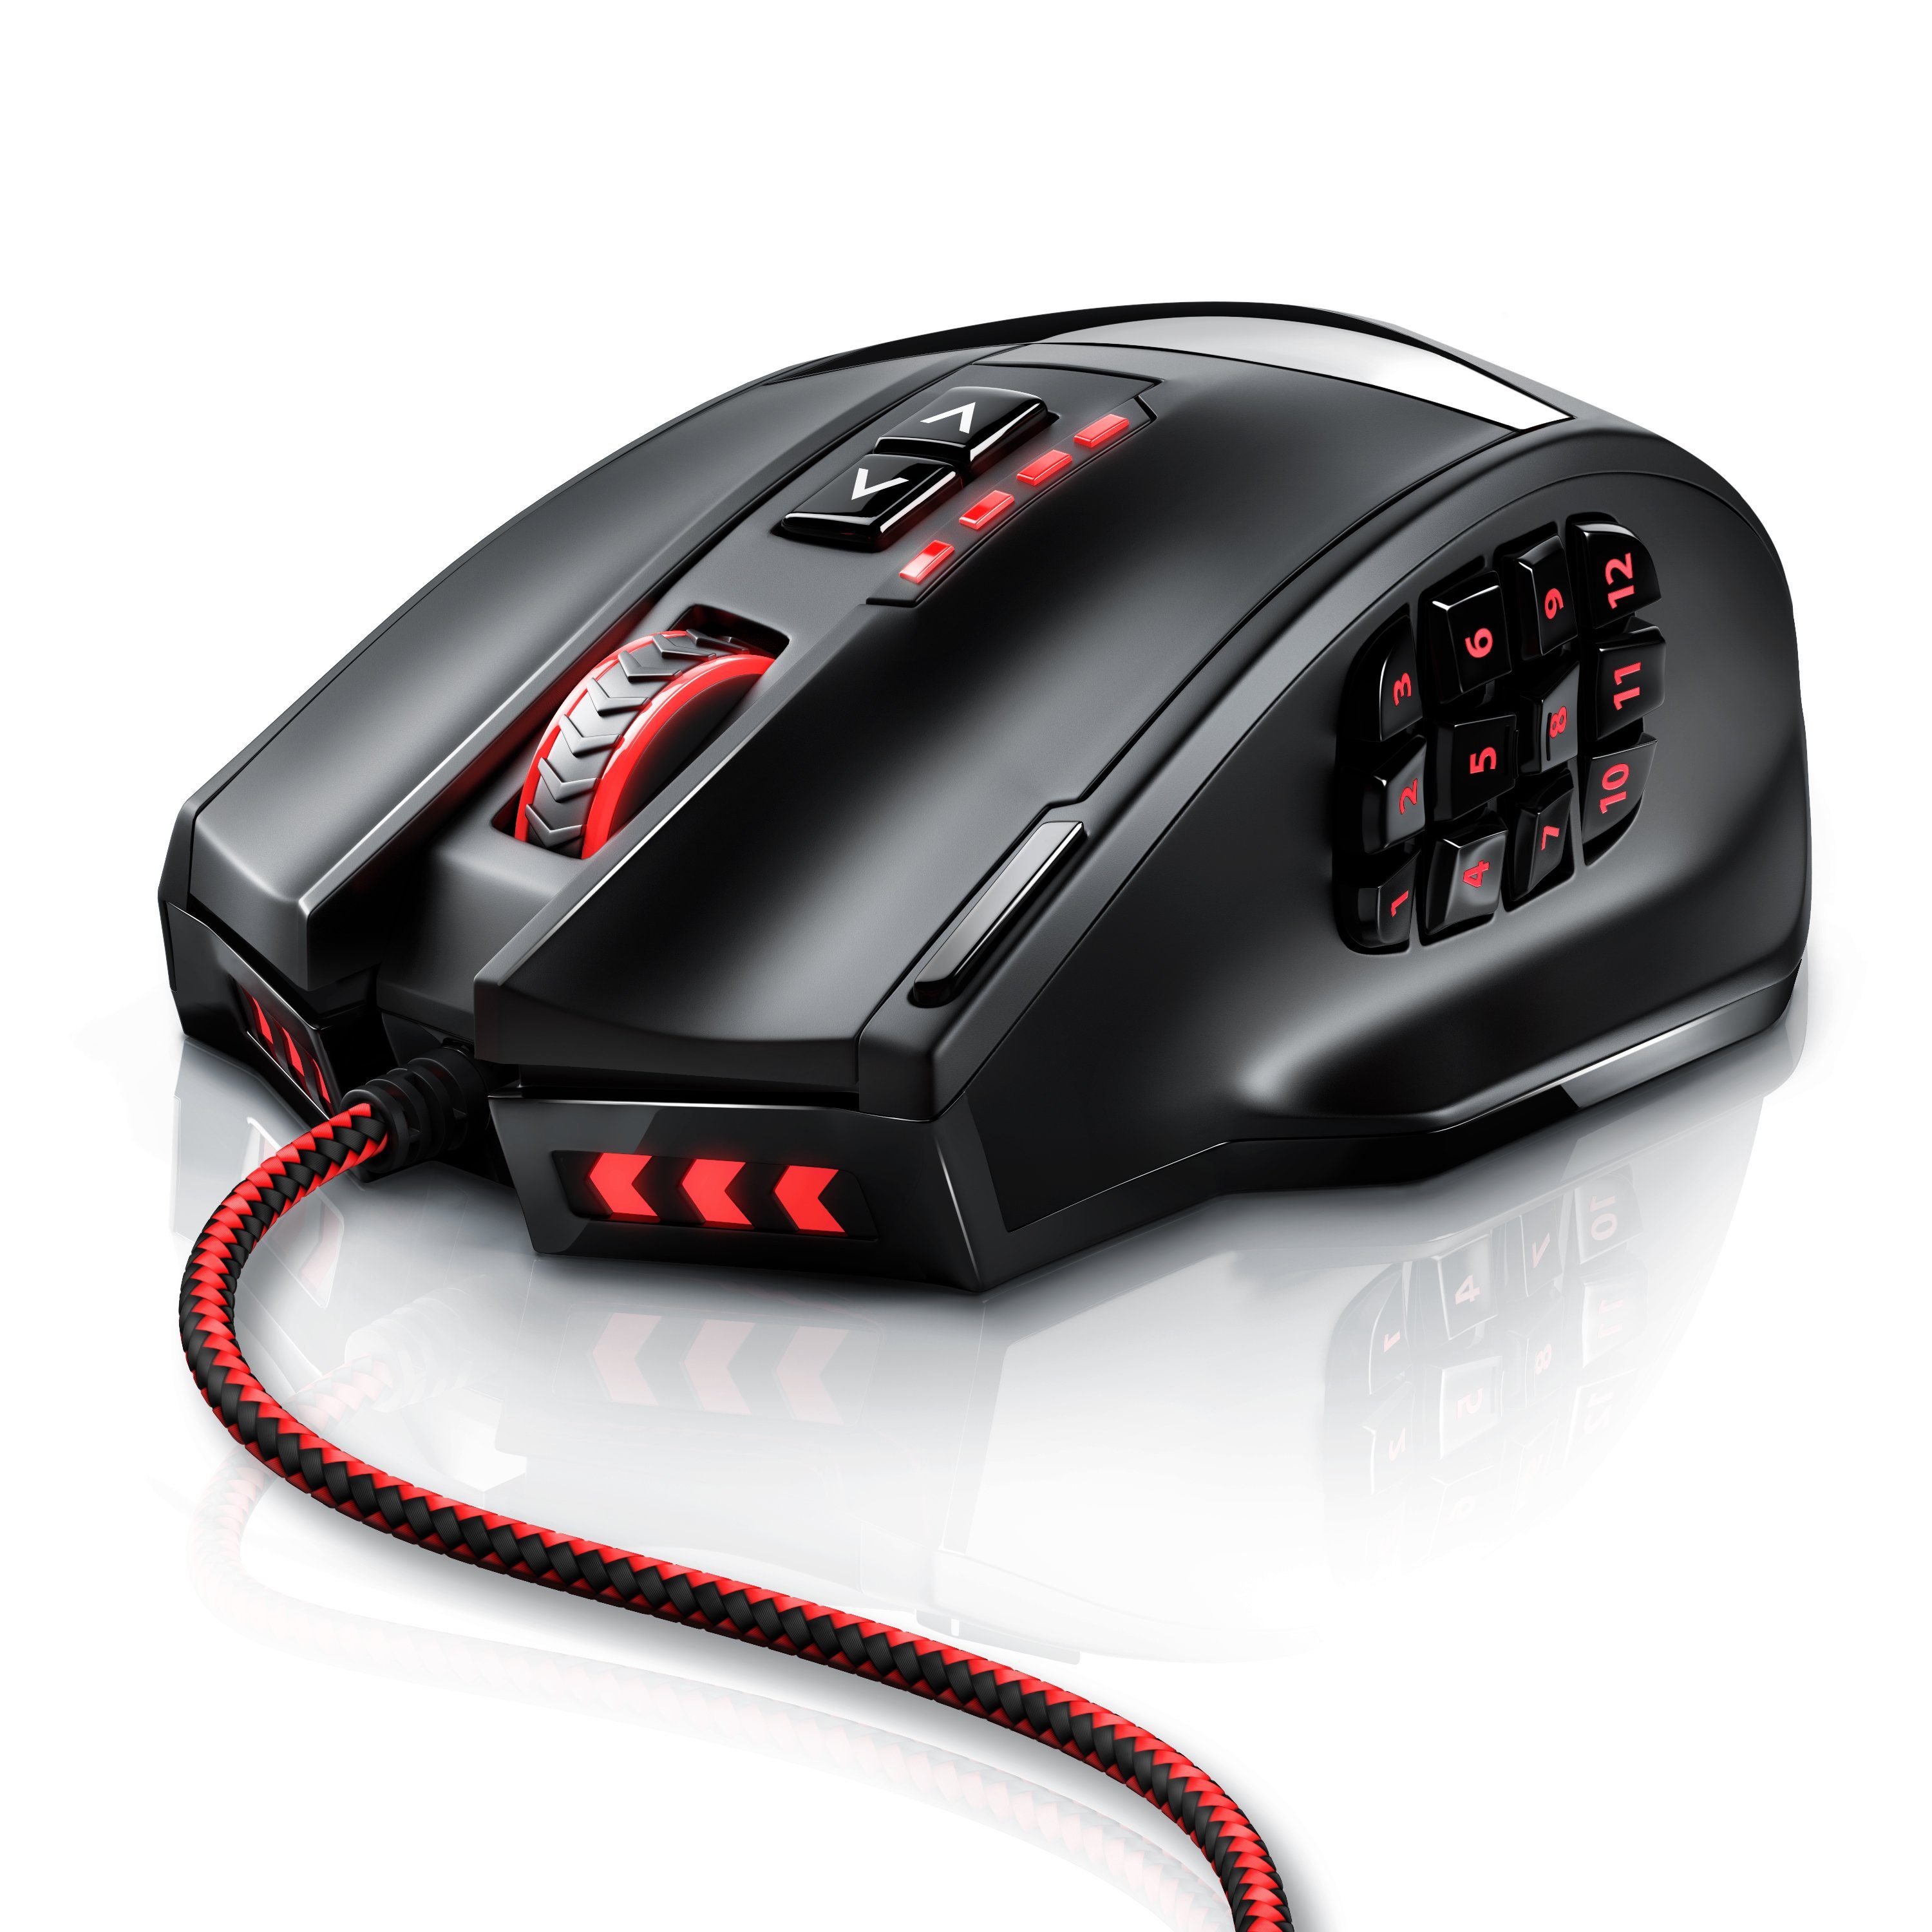 brandneu authentisch Titanwolf Gaming-Maus (kabelgebunden, 1000 MMO dpi, Gewichte) Mouse mit 18 programmierbare Tasten, USB 16400dpi